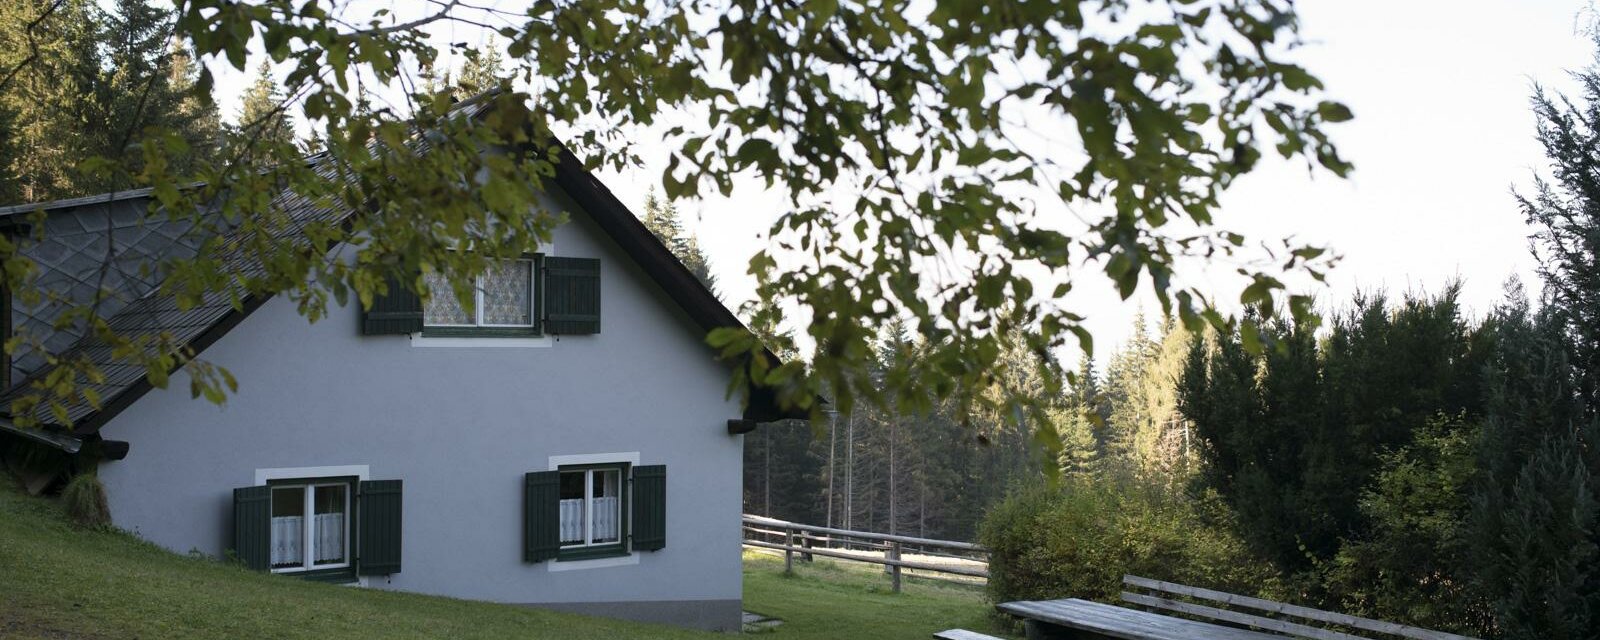 Brandnerhütte-Außenansicht-Murtal-Steiermark